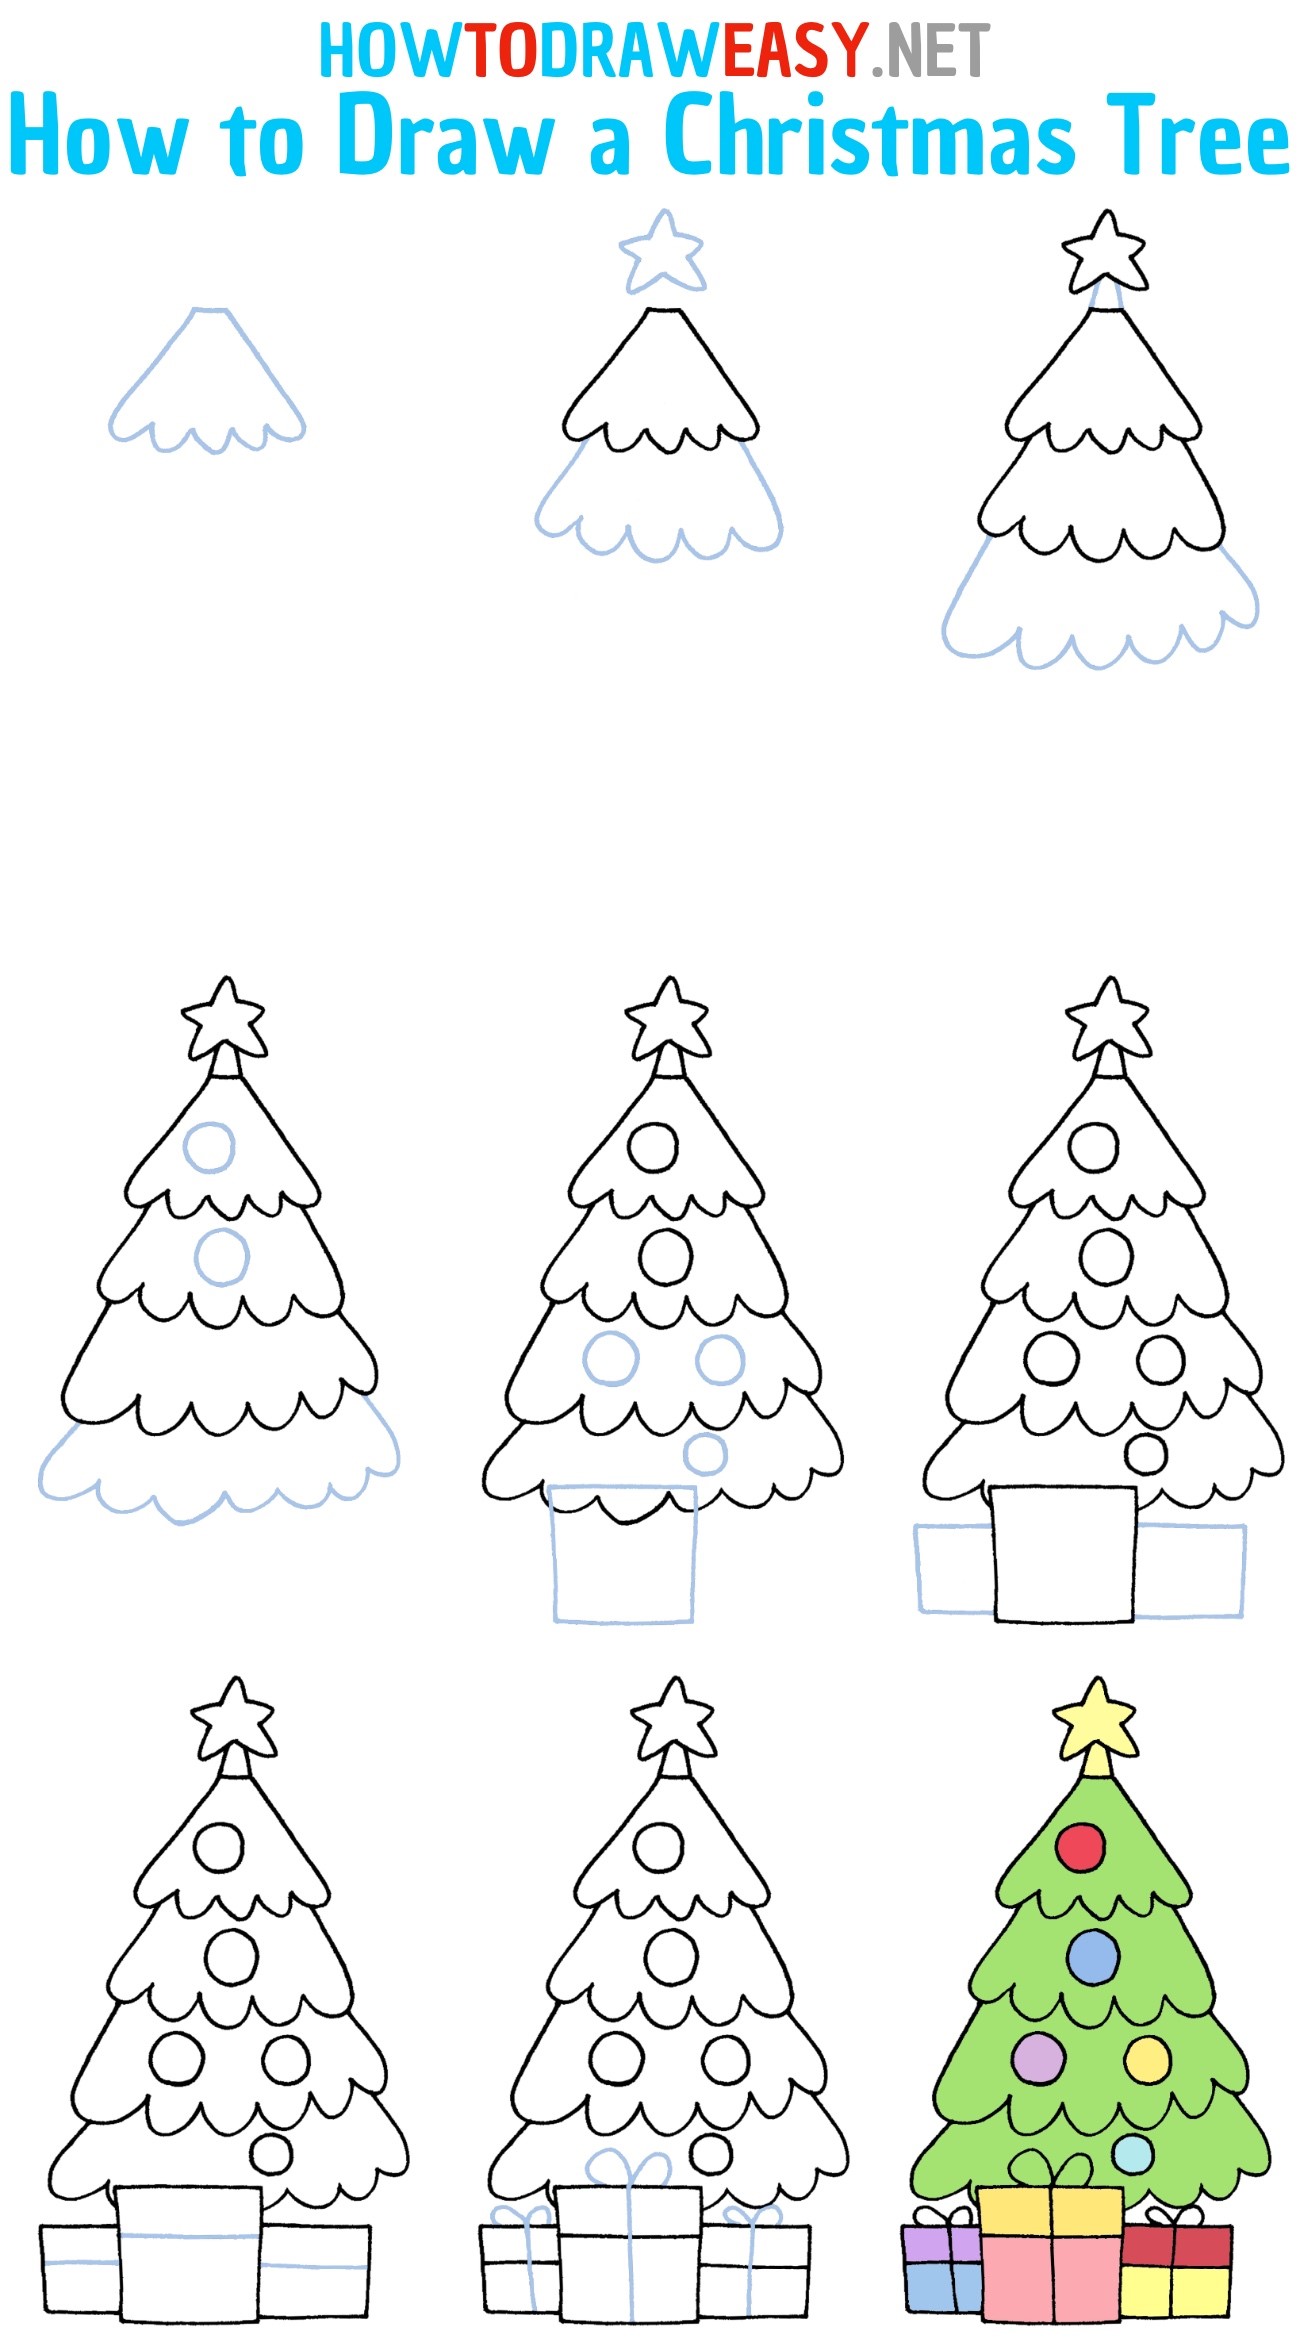 Idee für einen Weihnachtsbaum 15 zeichnen ideen